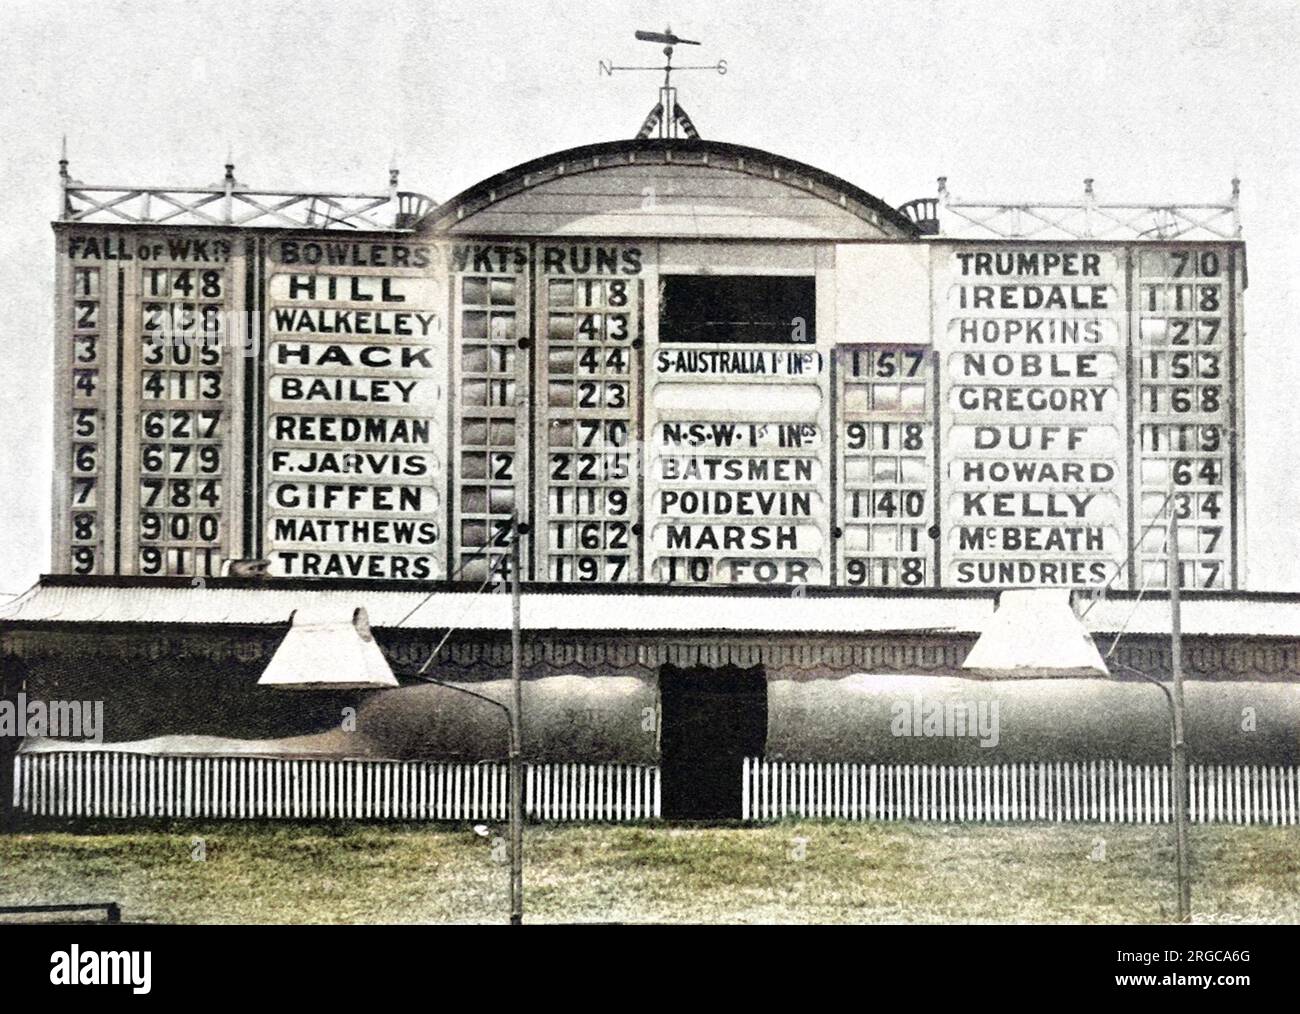 Le Sydney Cricket Ground Score-board lors du match de Sheffield Shield entre la Nouvelle-Galles du Sud et l'Australie méridionale, 8th janvier 1901. De nouveaux records ont été réalisés alors que la Nouvelle-Galles du Sud a obtenu 918 points, cinq de leurs joueurs ayant marqué des siècles. Banque D'Images